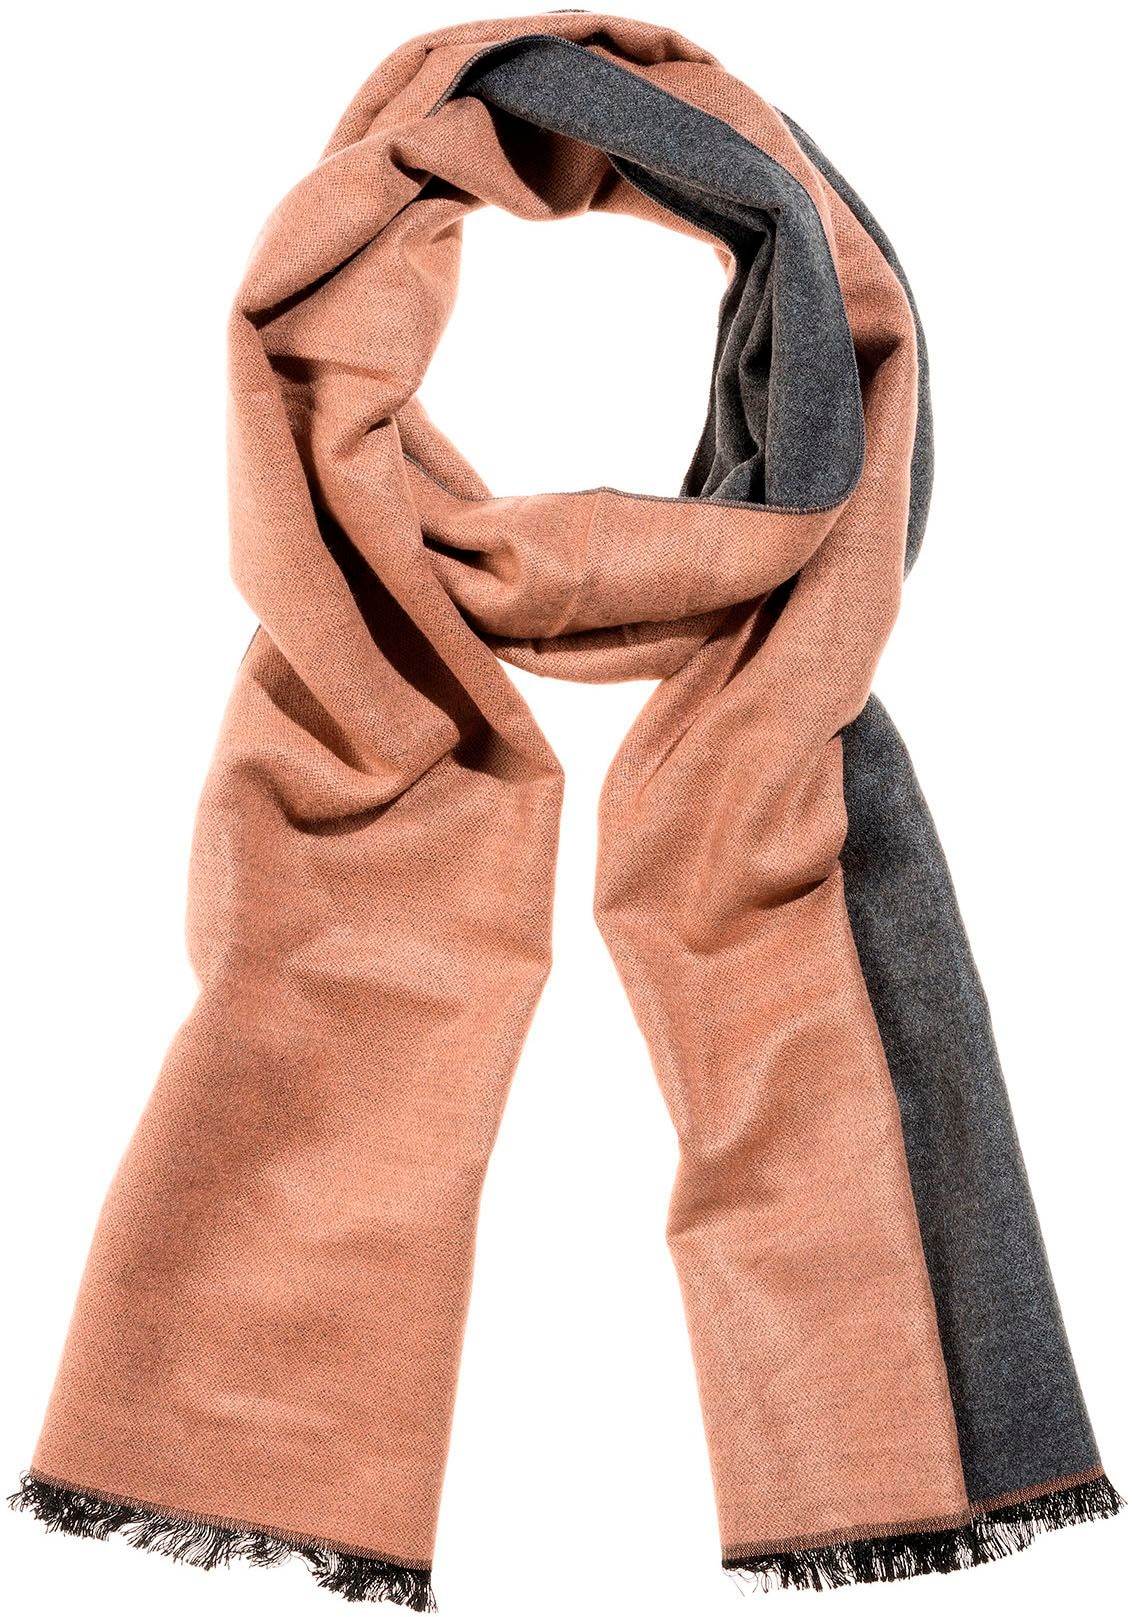 & Tücher - Herren aktuelle Schals bestellen jetzt online Modetrends